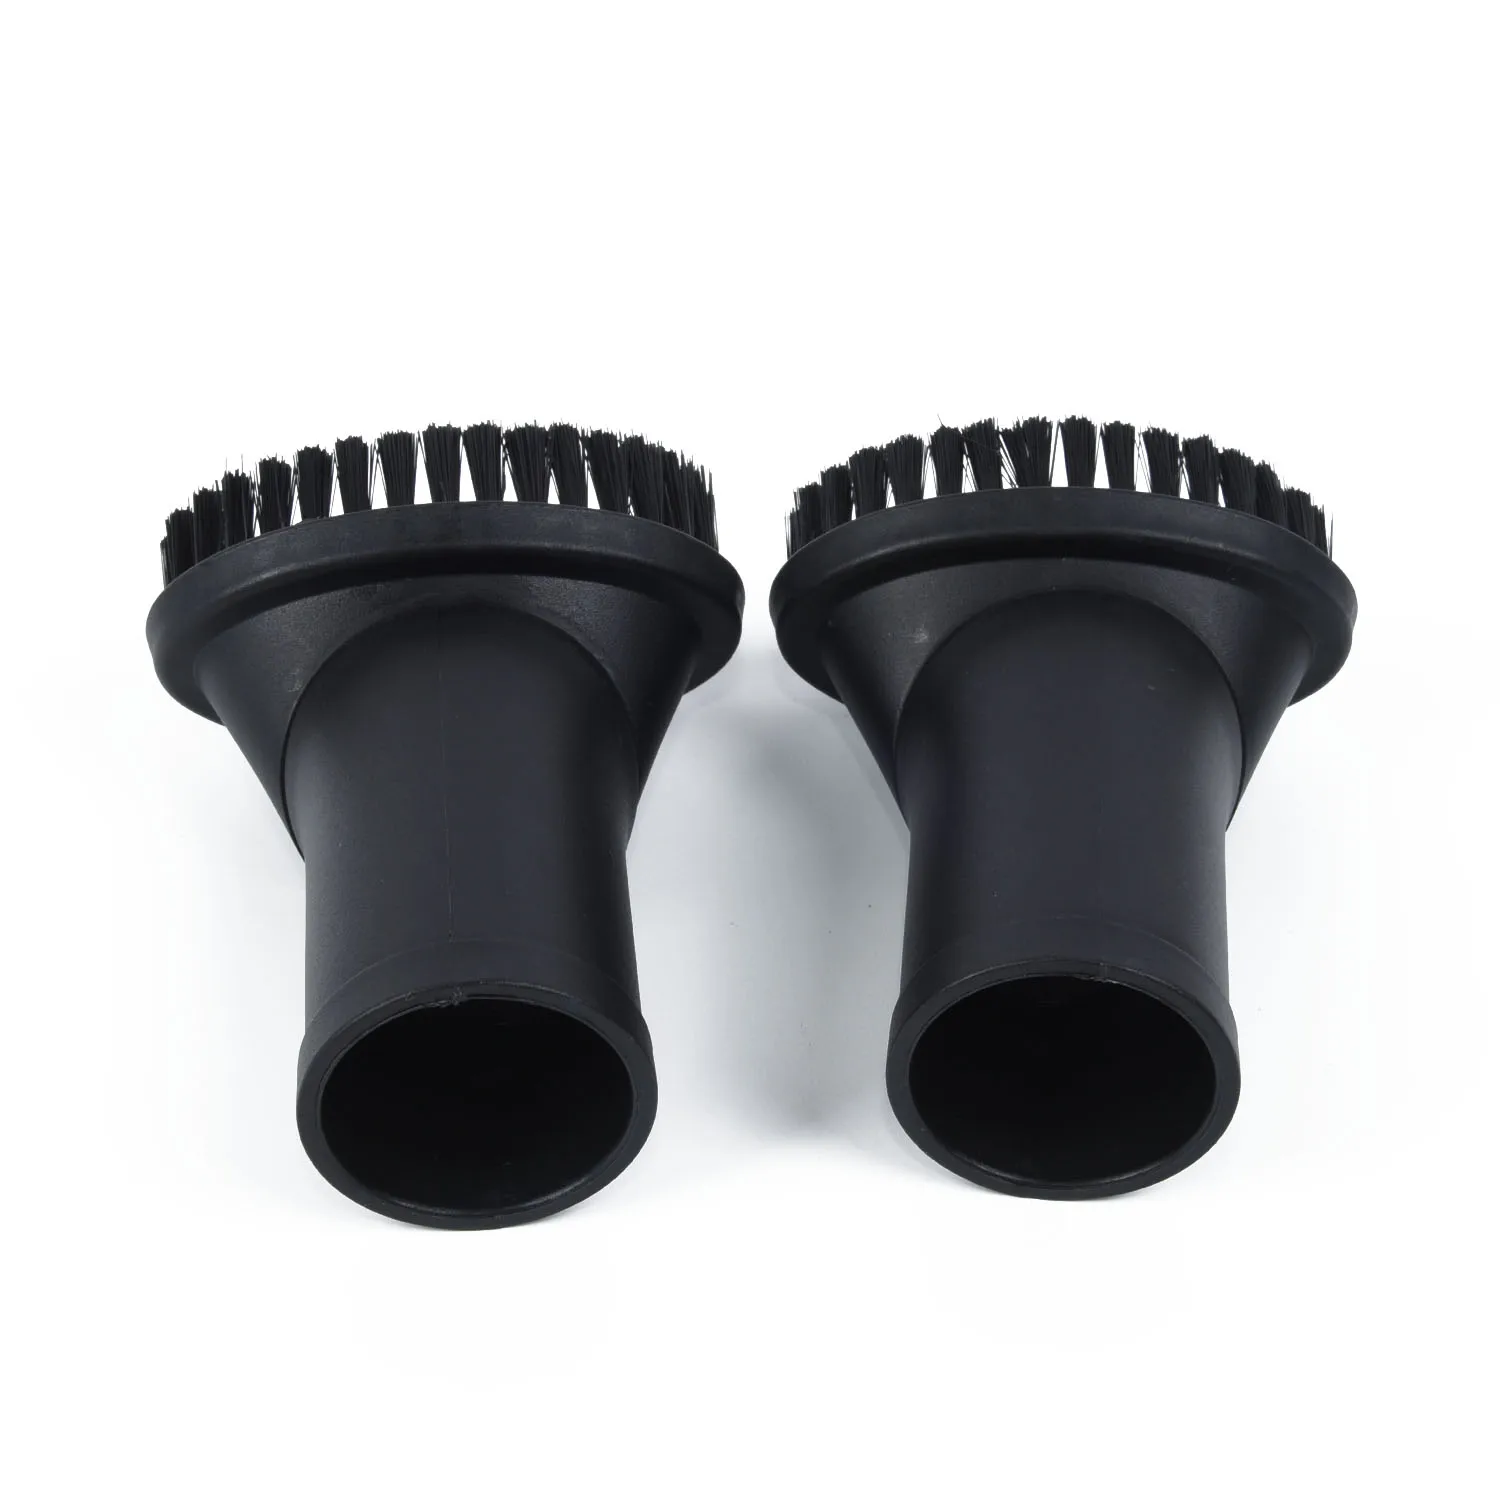 

New 2pcs Black Vacuum Cleaner Attachment Round Dust Brush Bristle Brush Head 35mm